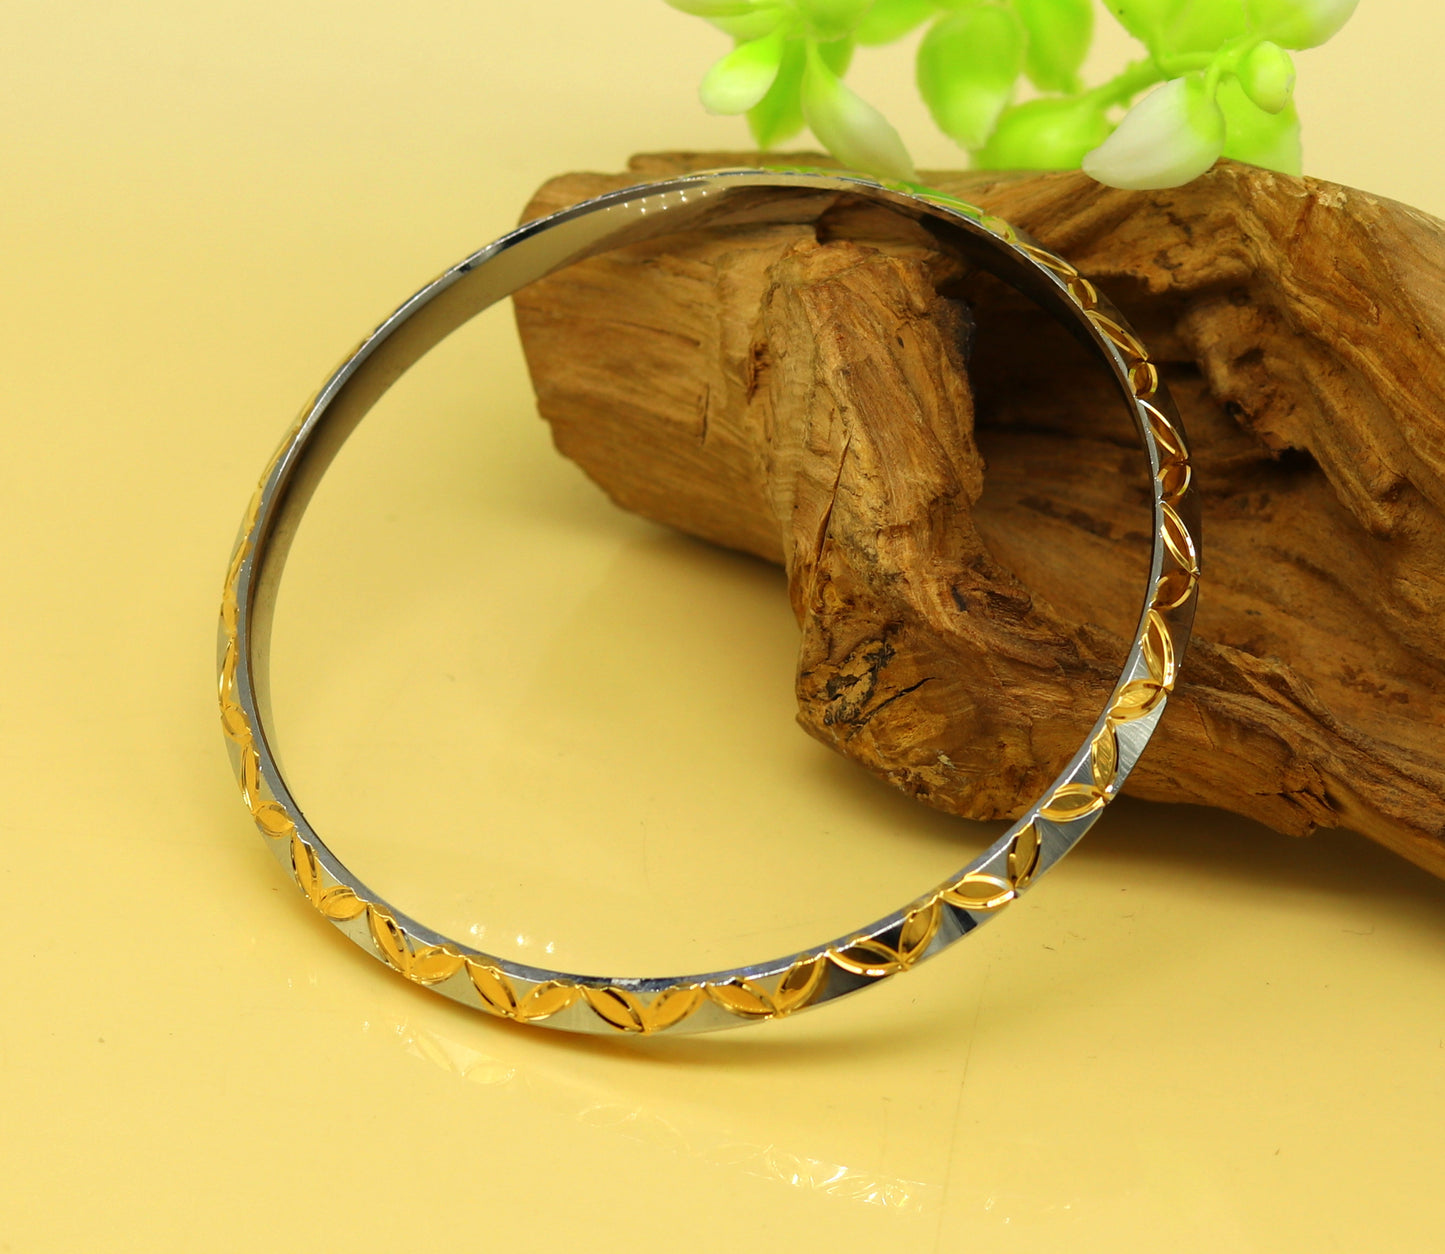 Punjabi Sikh solid silver gold polished bangle bracelet kada, amazing customized design personalized gift jewelry tribal india nssk247 - TRIBAL ORNAMENTS